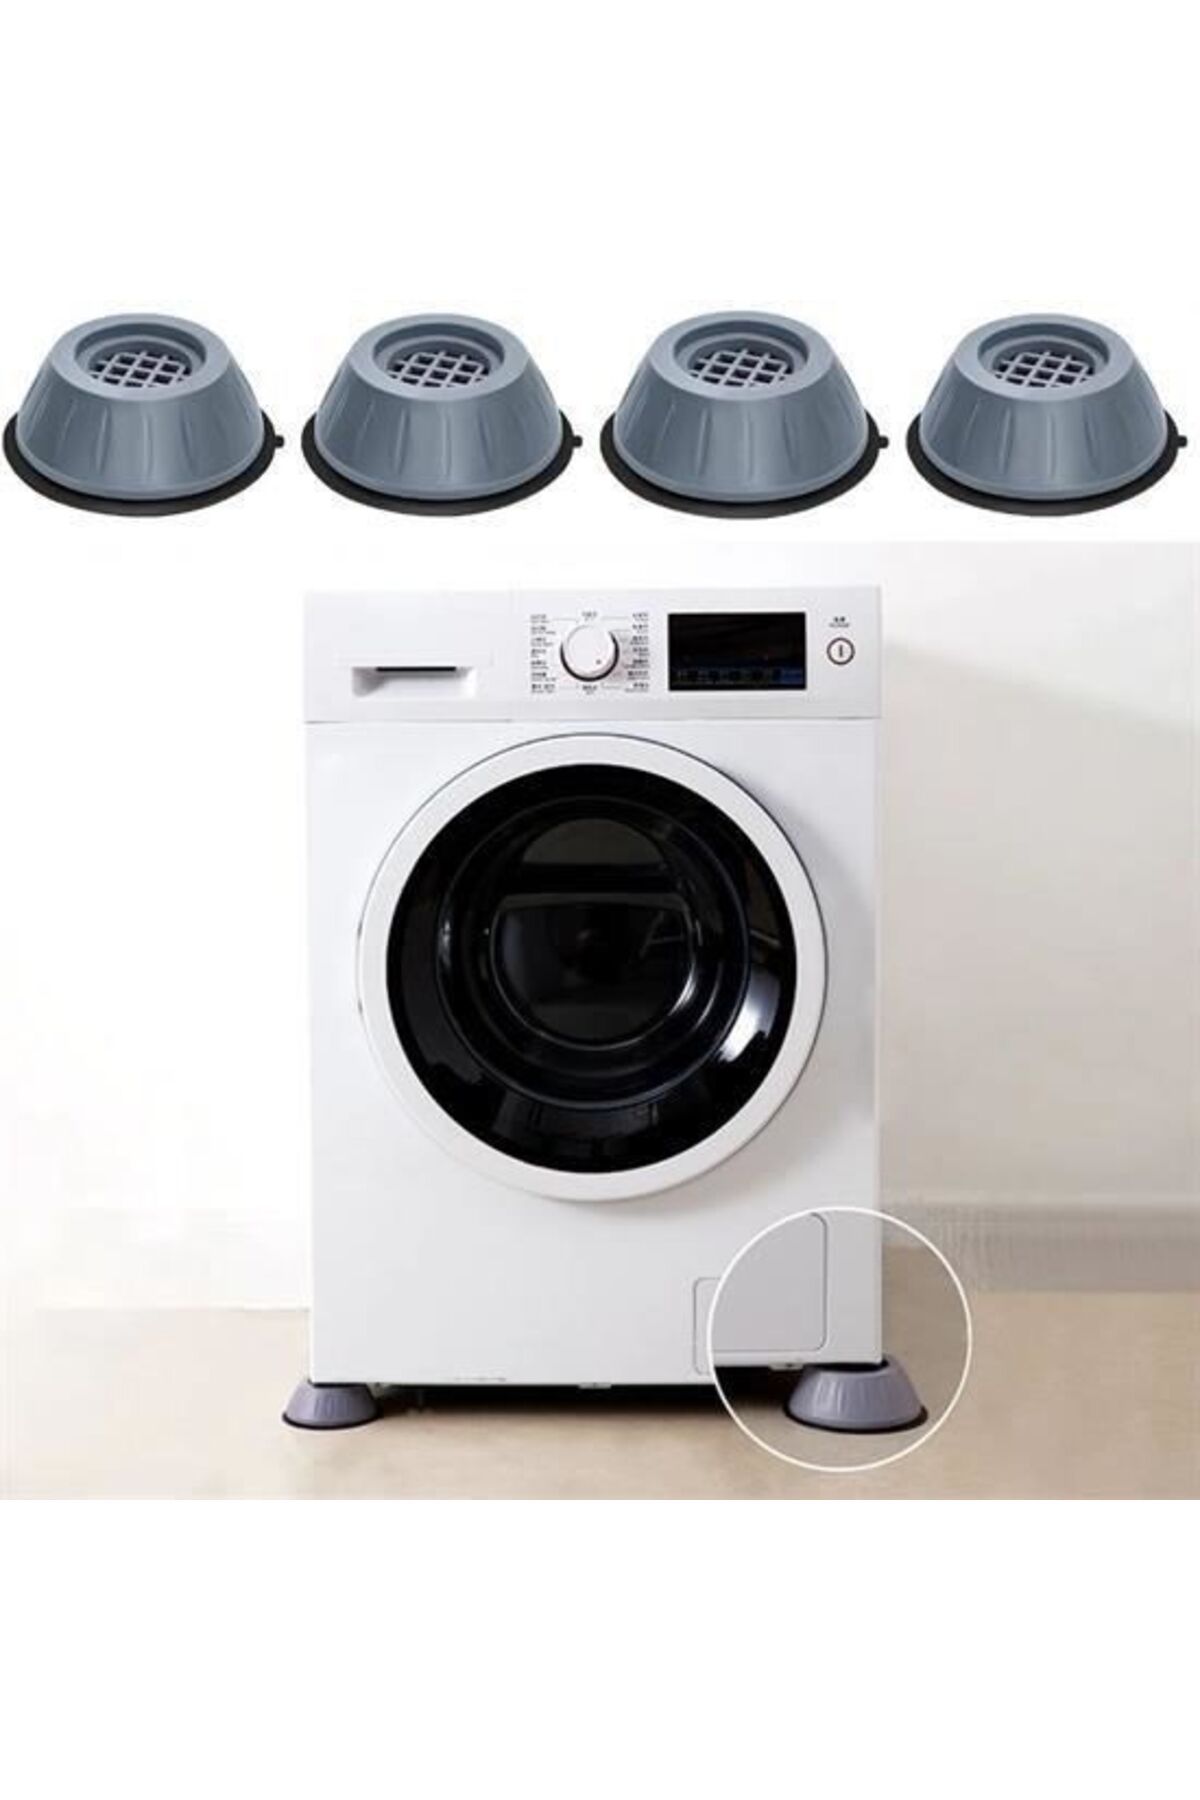 SKY TOPTAN Çamaşır Makinesi Sarsıntı Titreşim Ses Önleyici Kaydırmaz Ayak 4lü Set